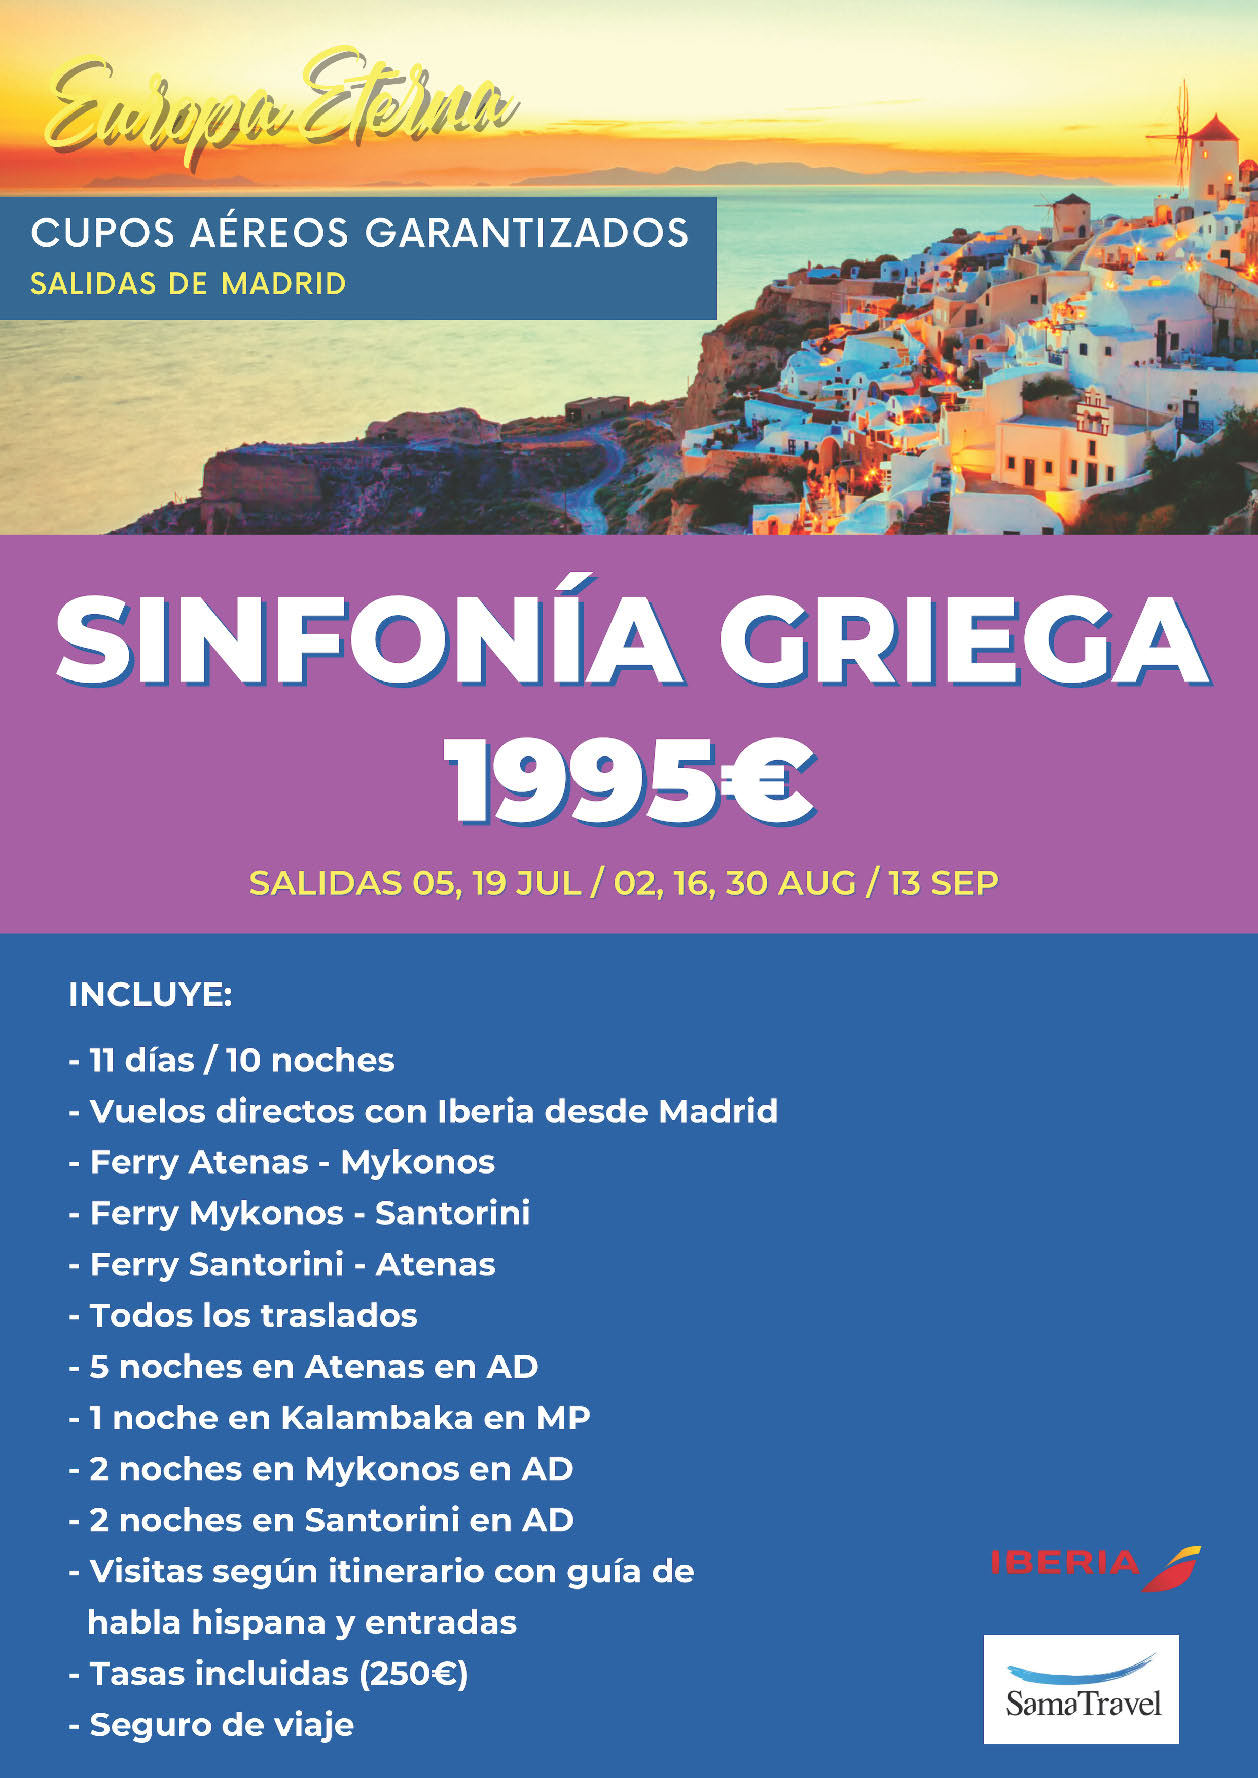 Oferta Sama Travel Circuito Atenas e islas Mikonos y Santorini cupos 11 dias salidas Julio Agosto Septiembre desde Madrid vuelos Iberia